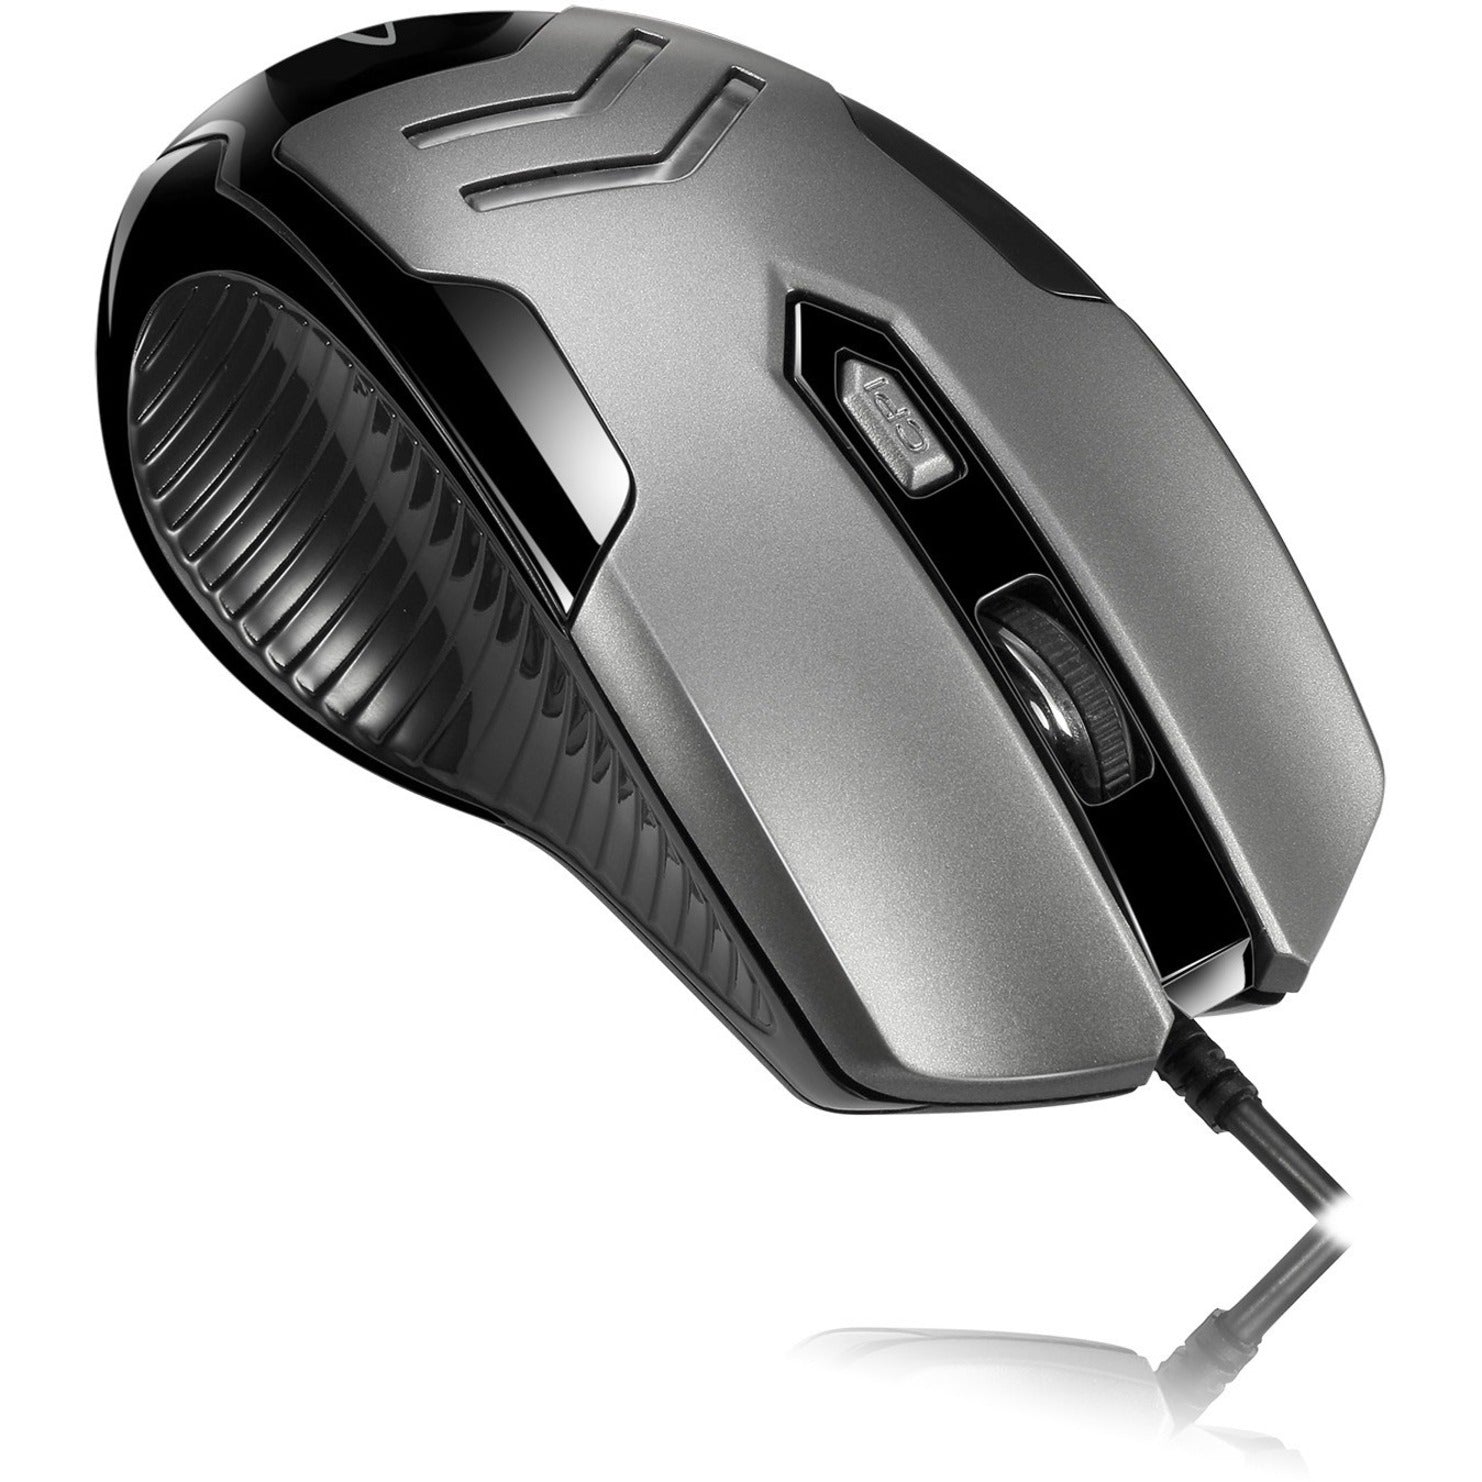 品牌: Adesso Adesso IMOUSE X1 多色 6 按键 游戏鼠标 人体工程学设计 3200 DPI USB 有线